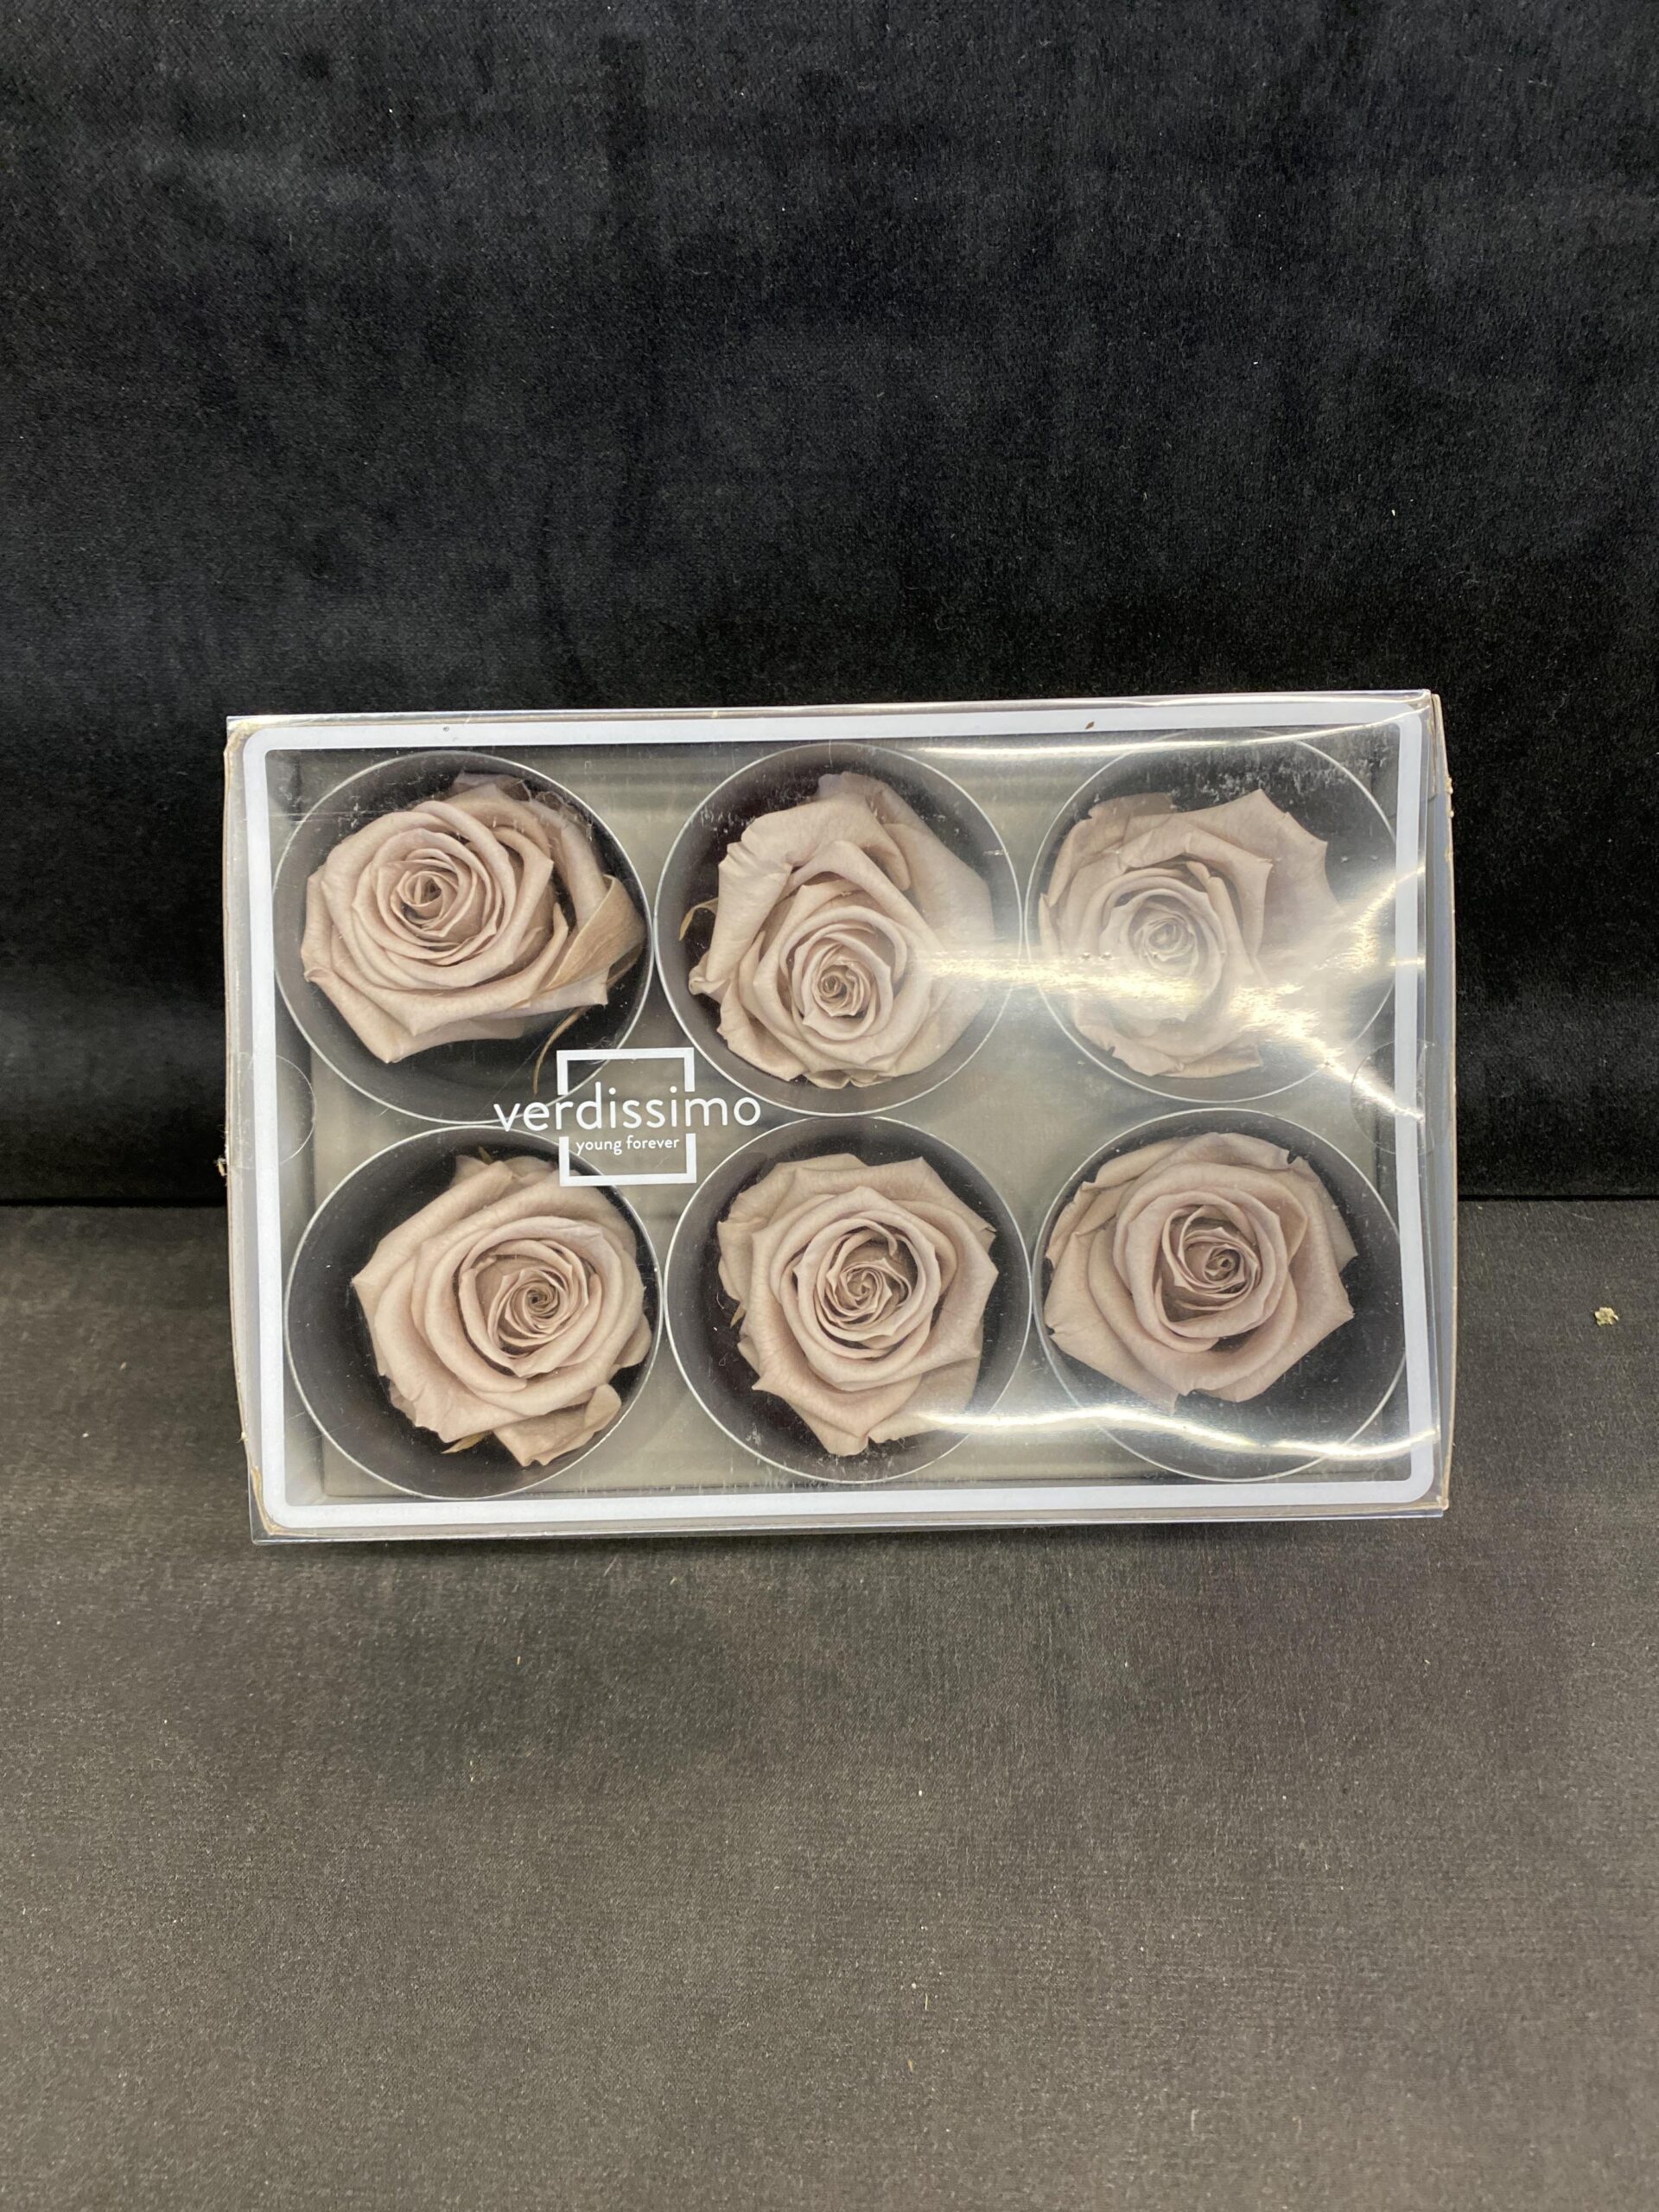 Box of 6 Verdissimo Preserved Flowers – Rose